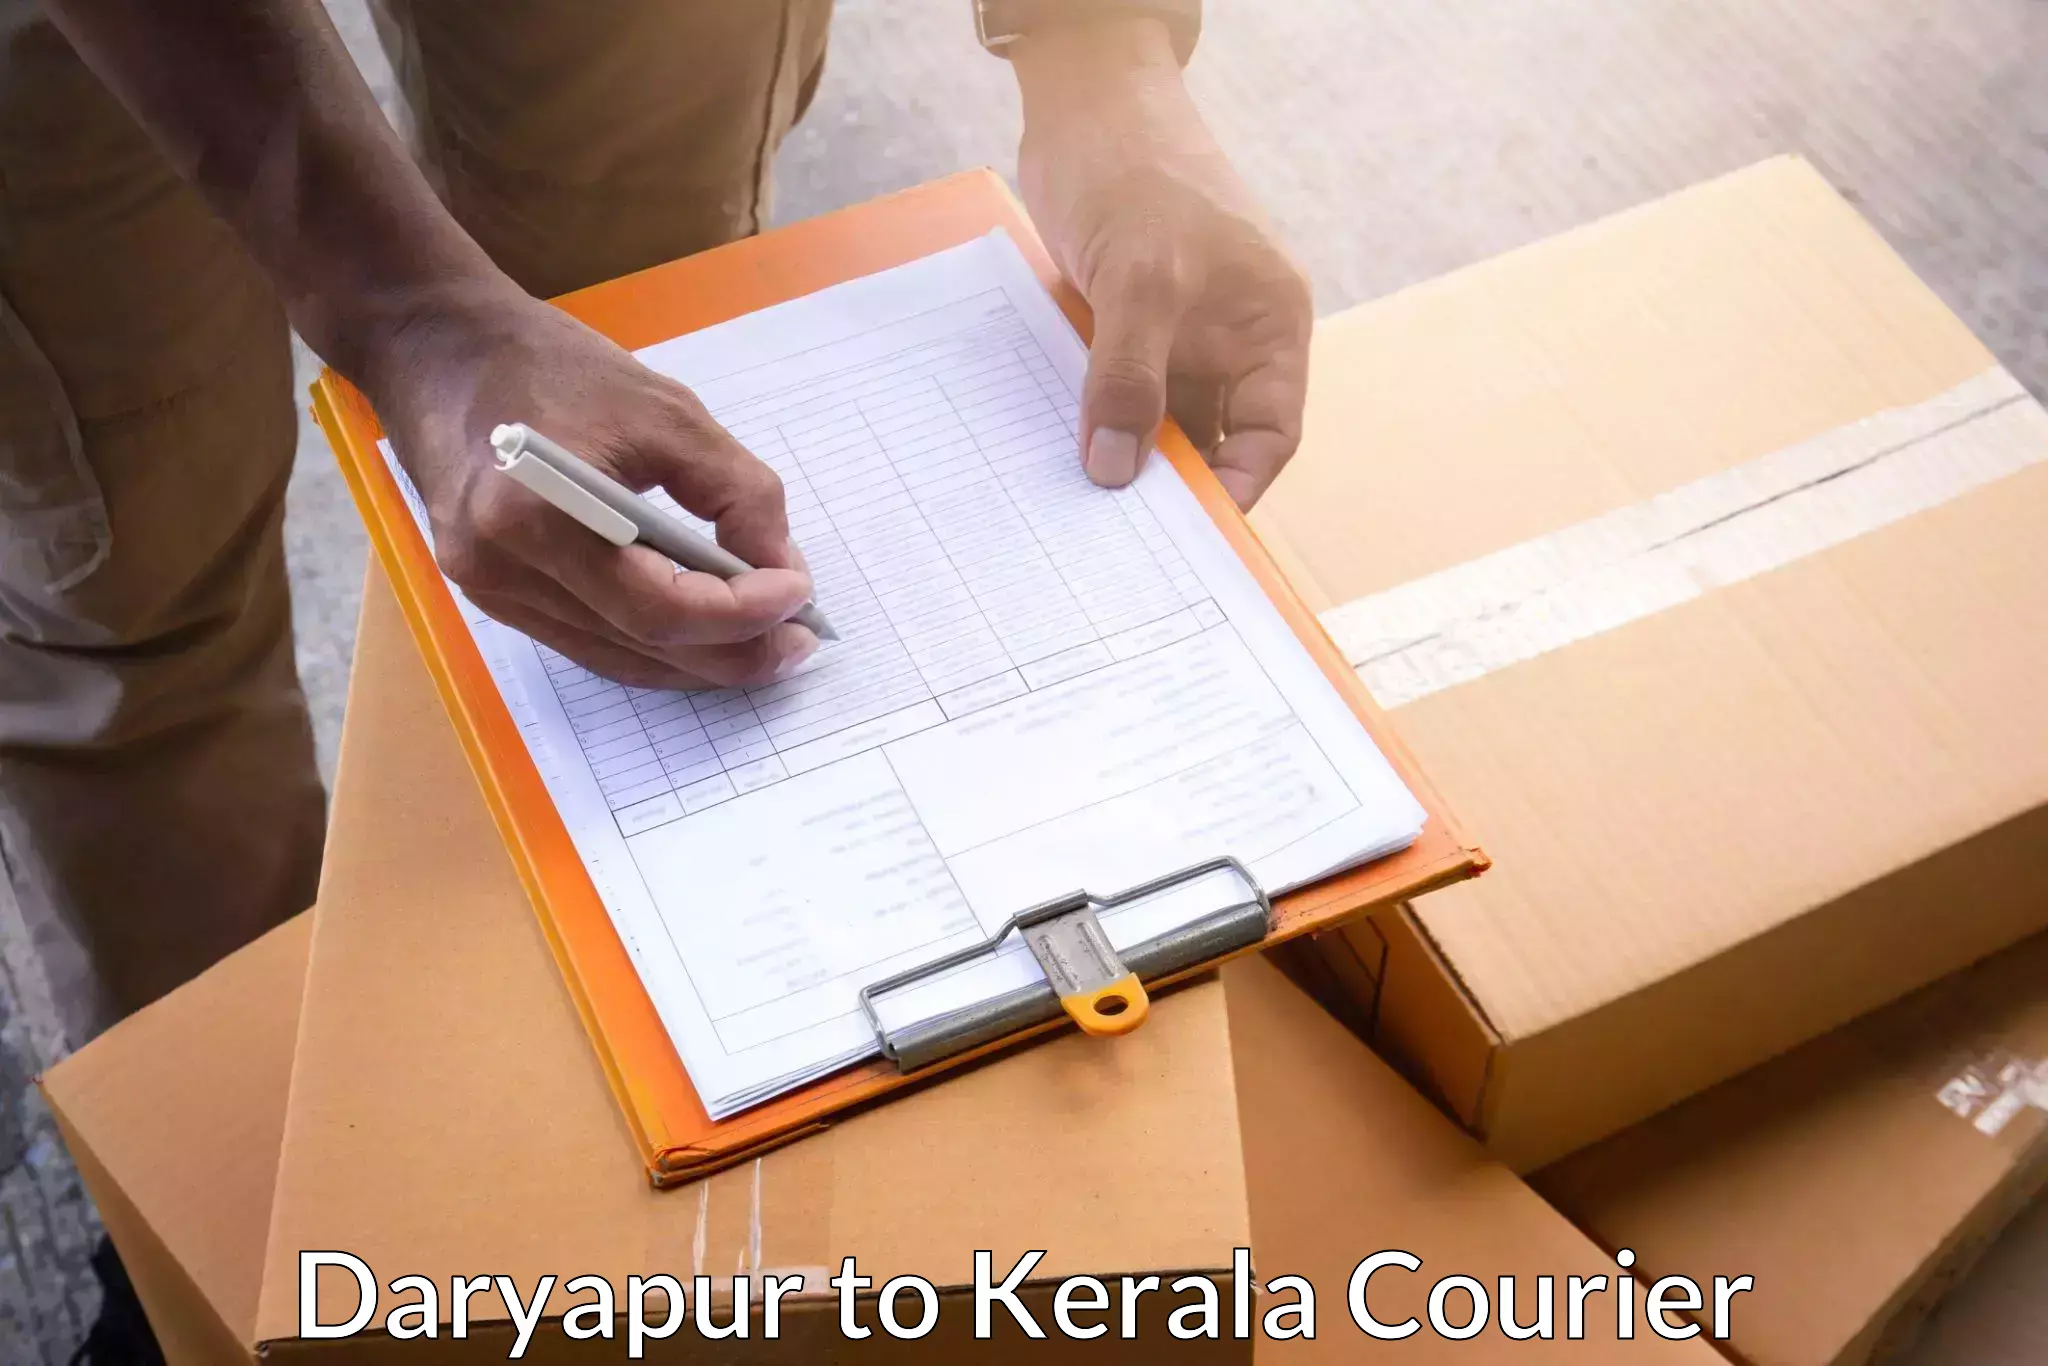 Bulk shipping discounts Daryapur to Thiruvananthapuram